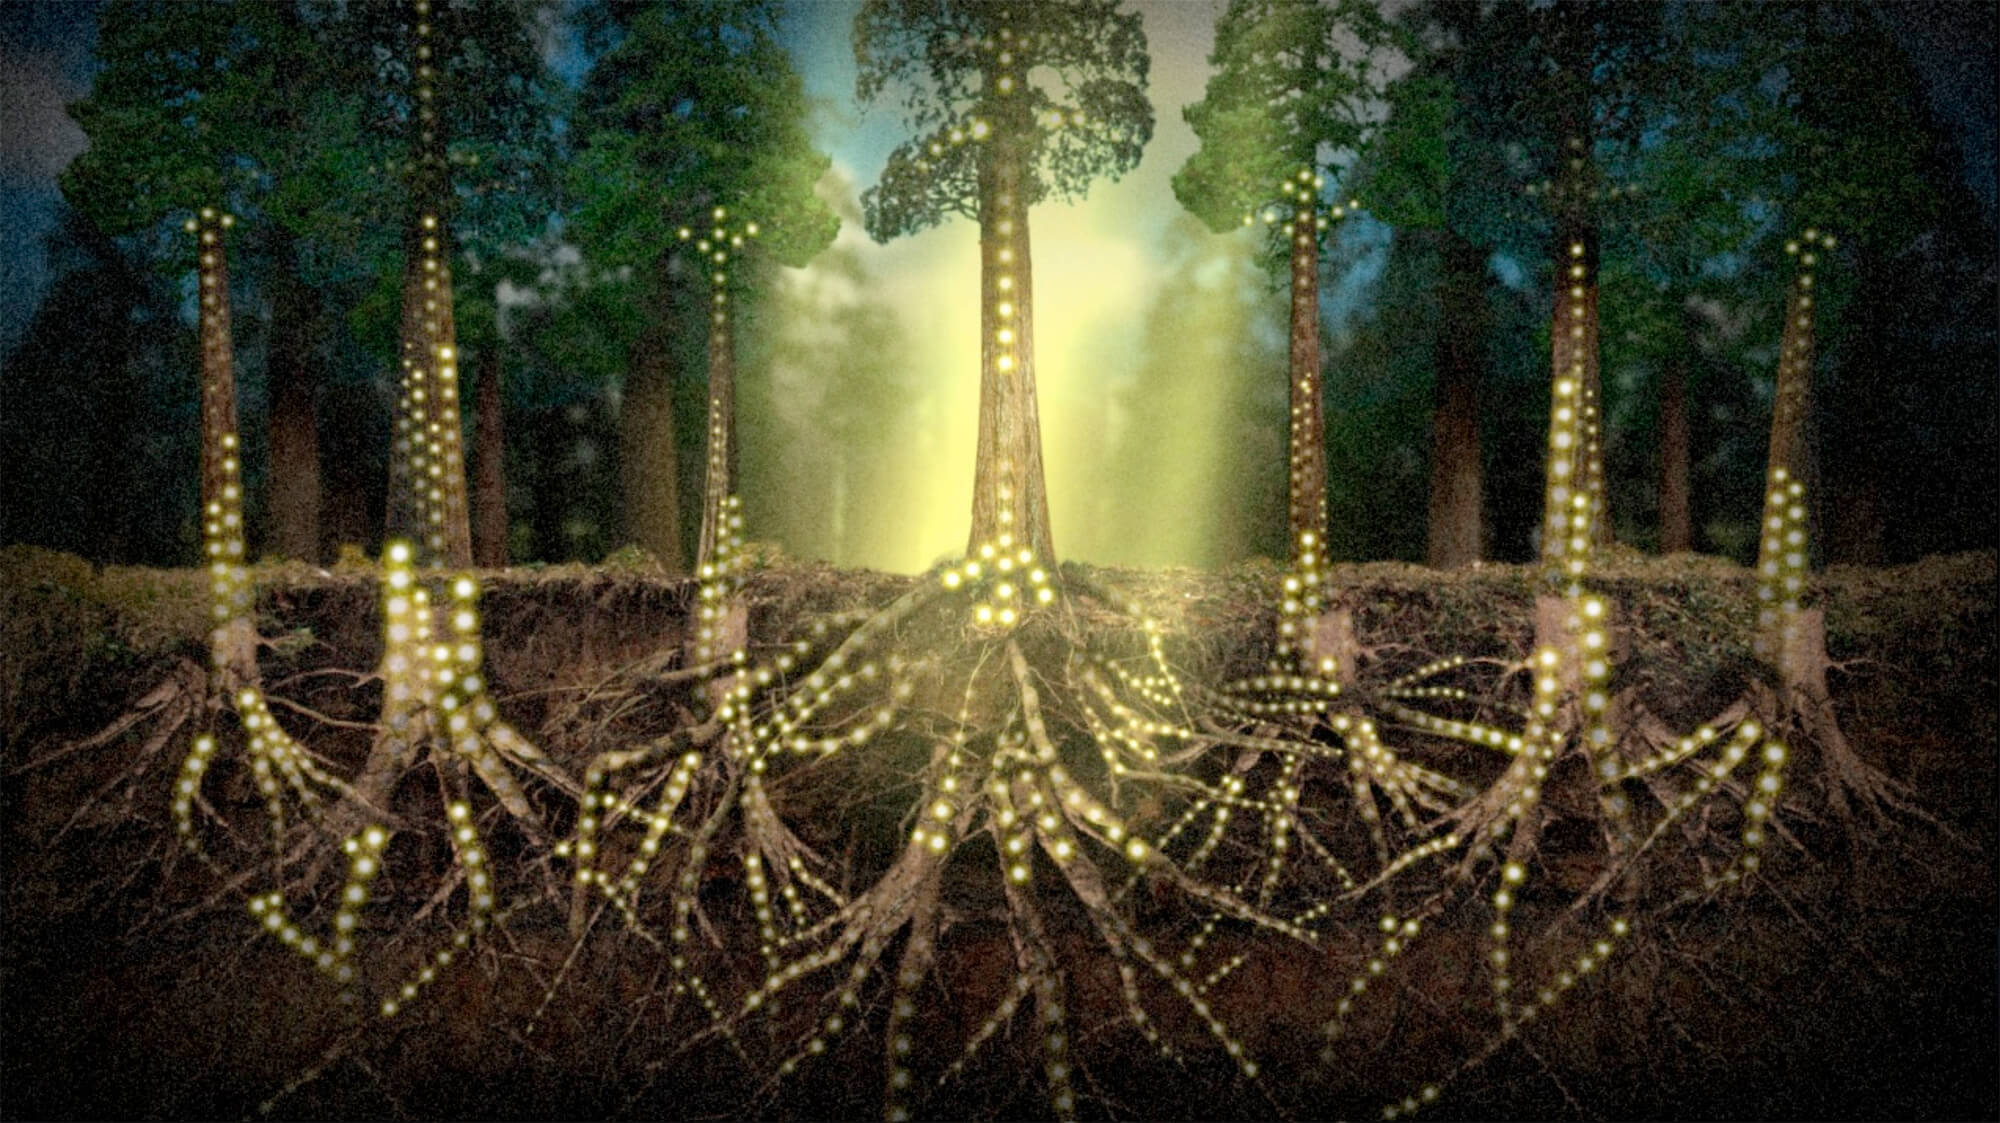 Illustration of enlightened trees.